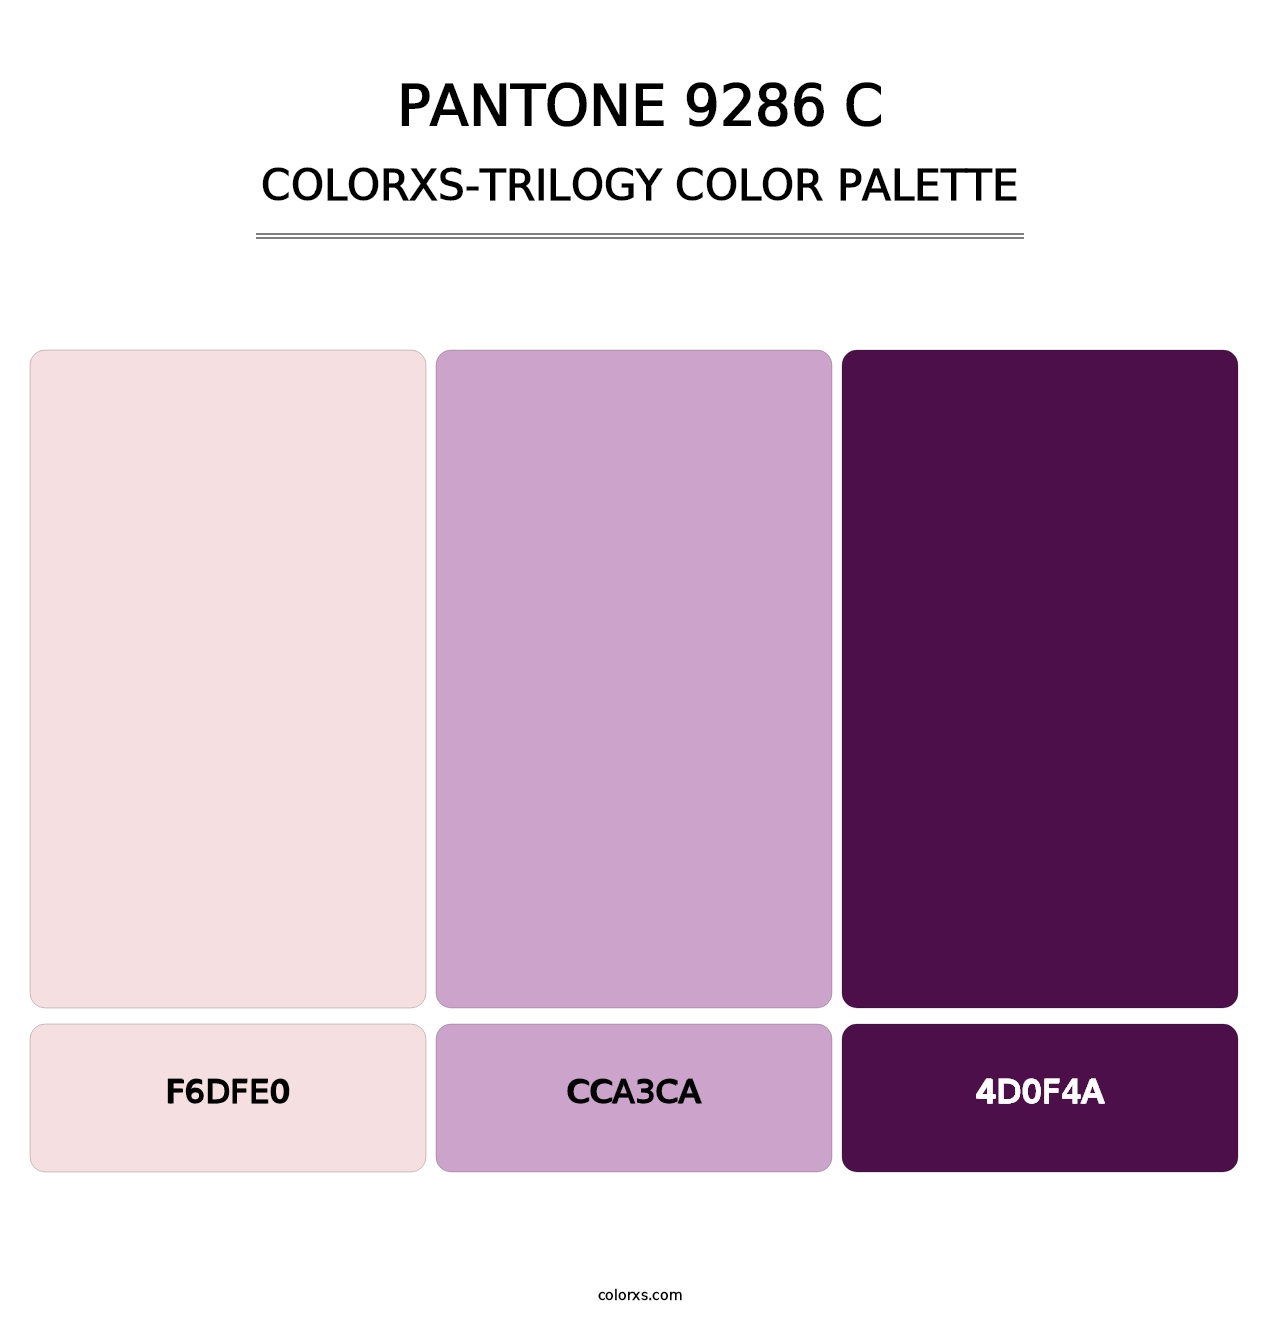 PANTONE 9286 C - Colorxs Trilogy Palette